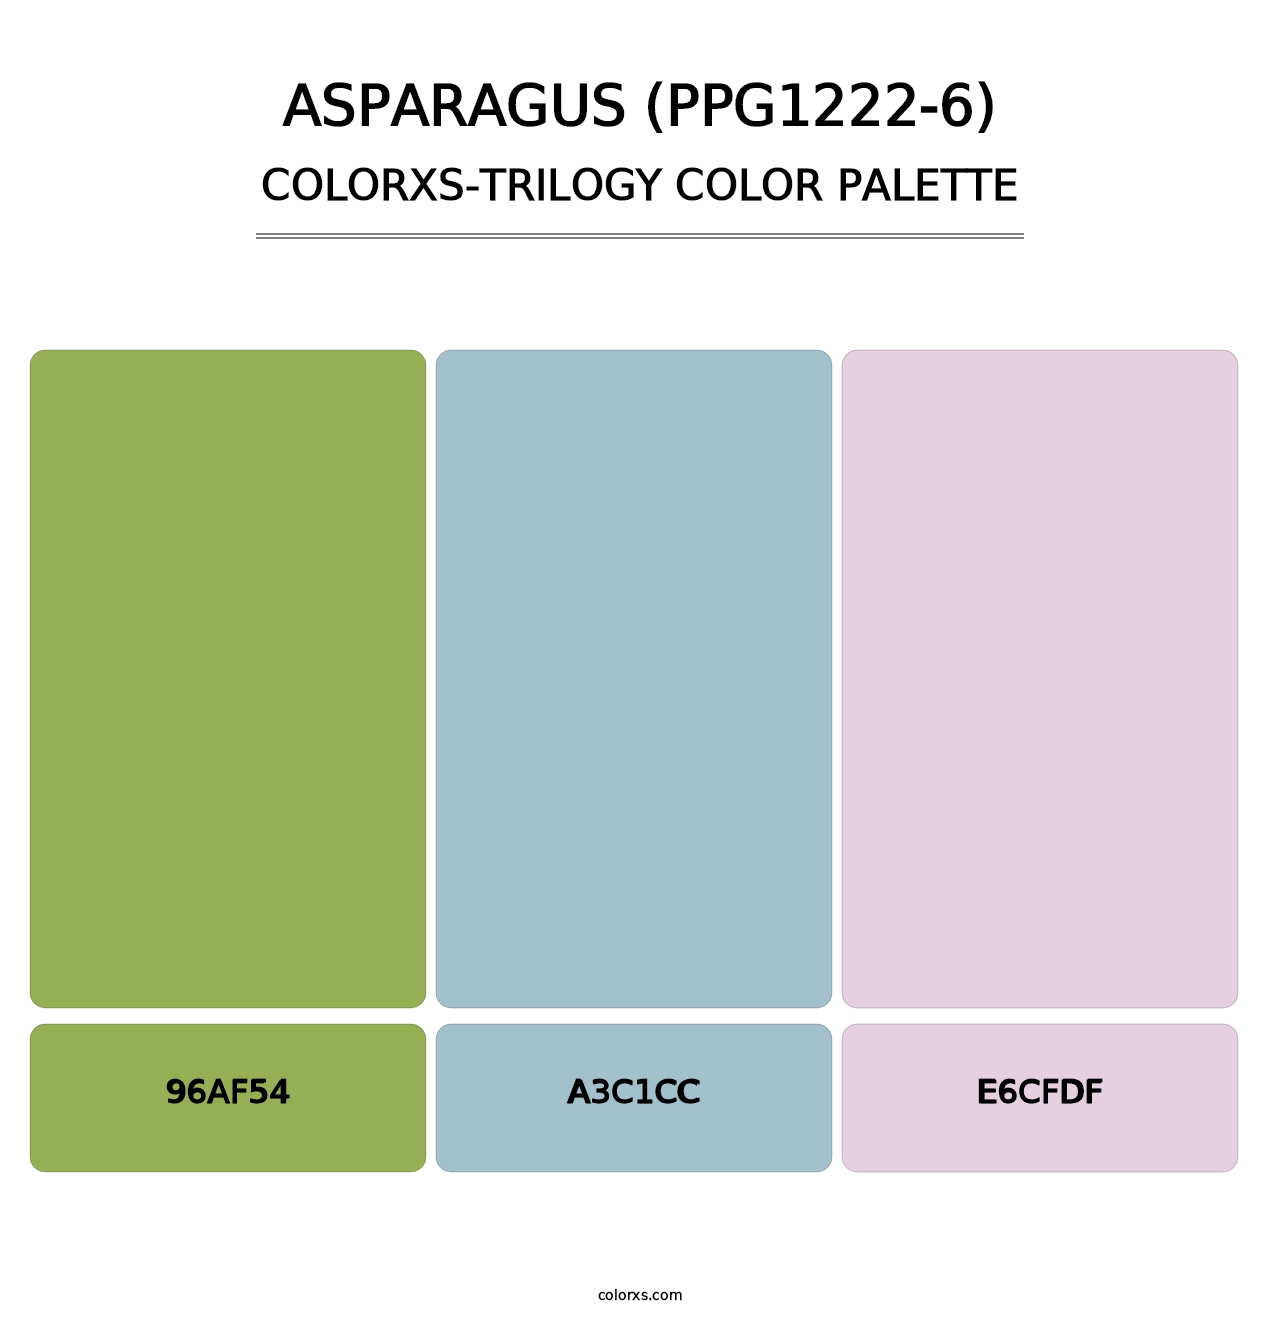 Asparagus (PPG1222-6) - Colorxs Trilogy Palette